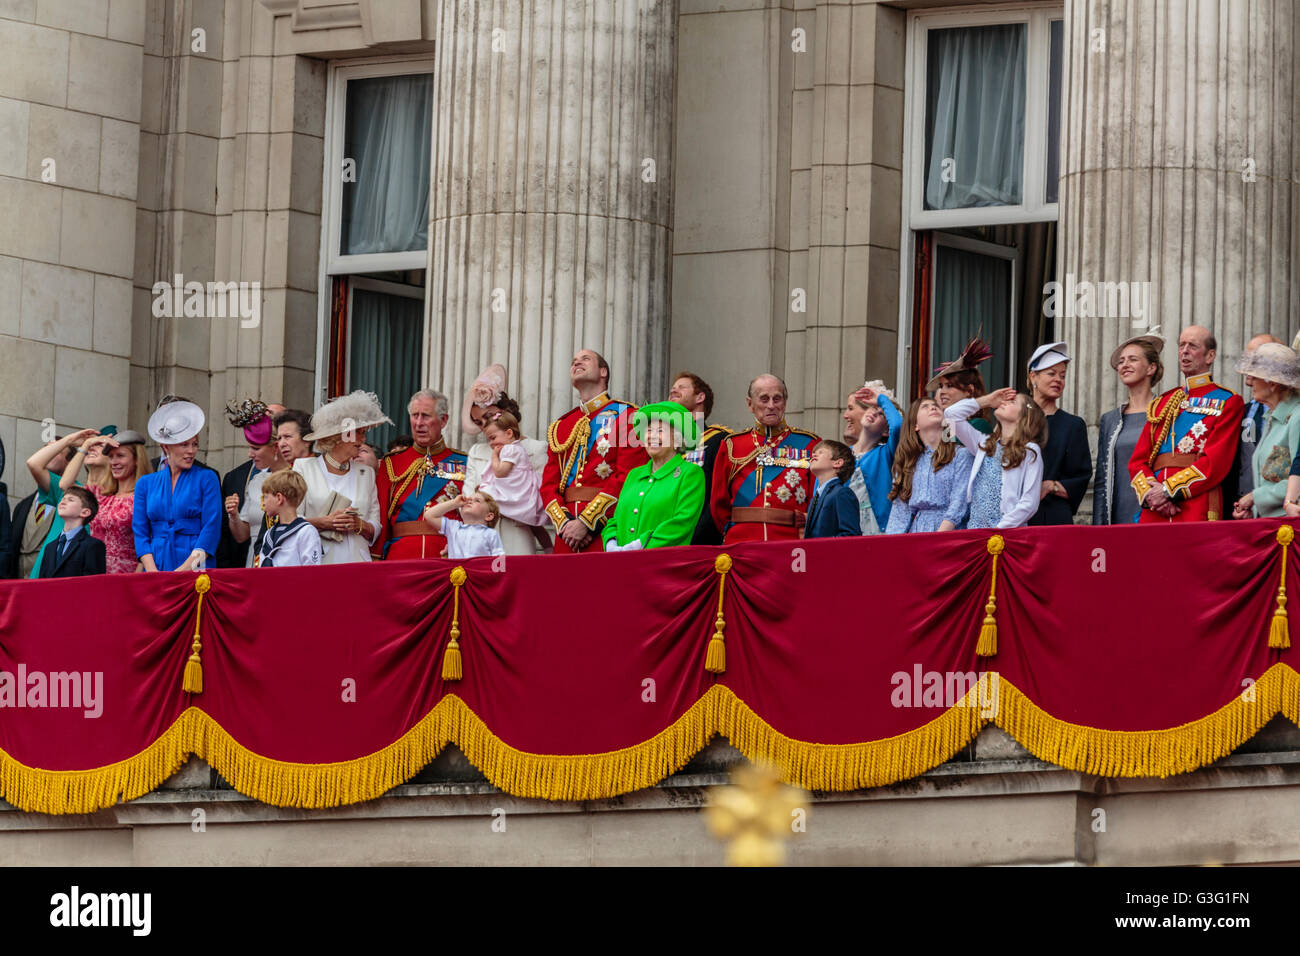 La Famille royale célèbre le Queens anniversaire sur le balcon de Buckingham Palace London UK 2016 Banque D'Images